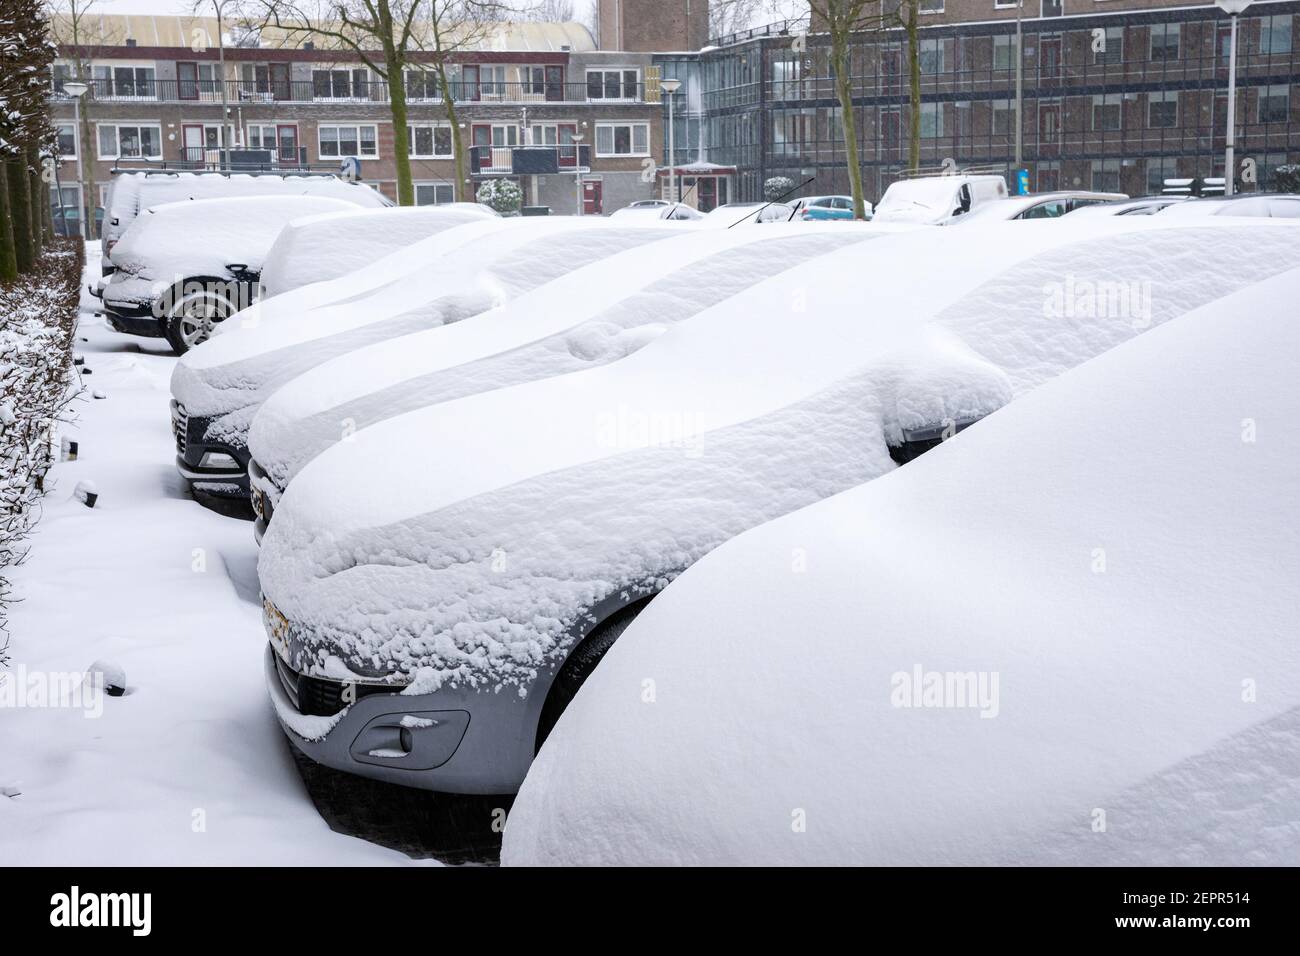 Les voitures sont recouvertes d'une épaisse couche de neige fraîche Banque D'Images